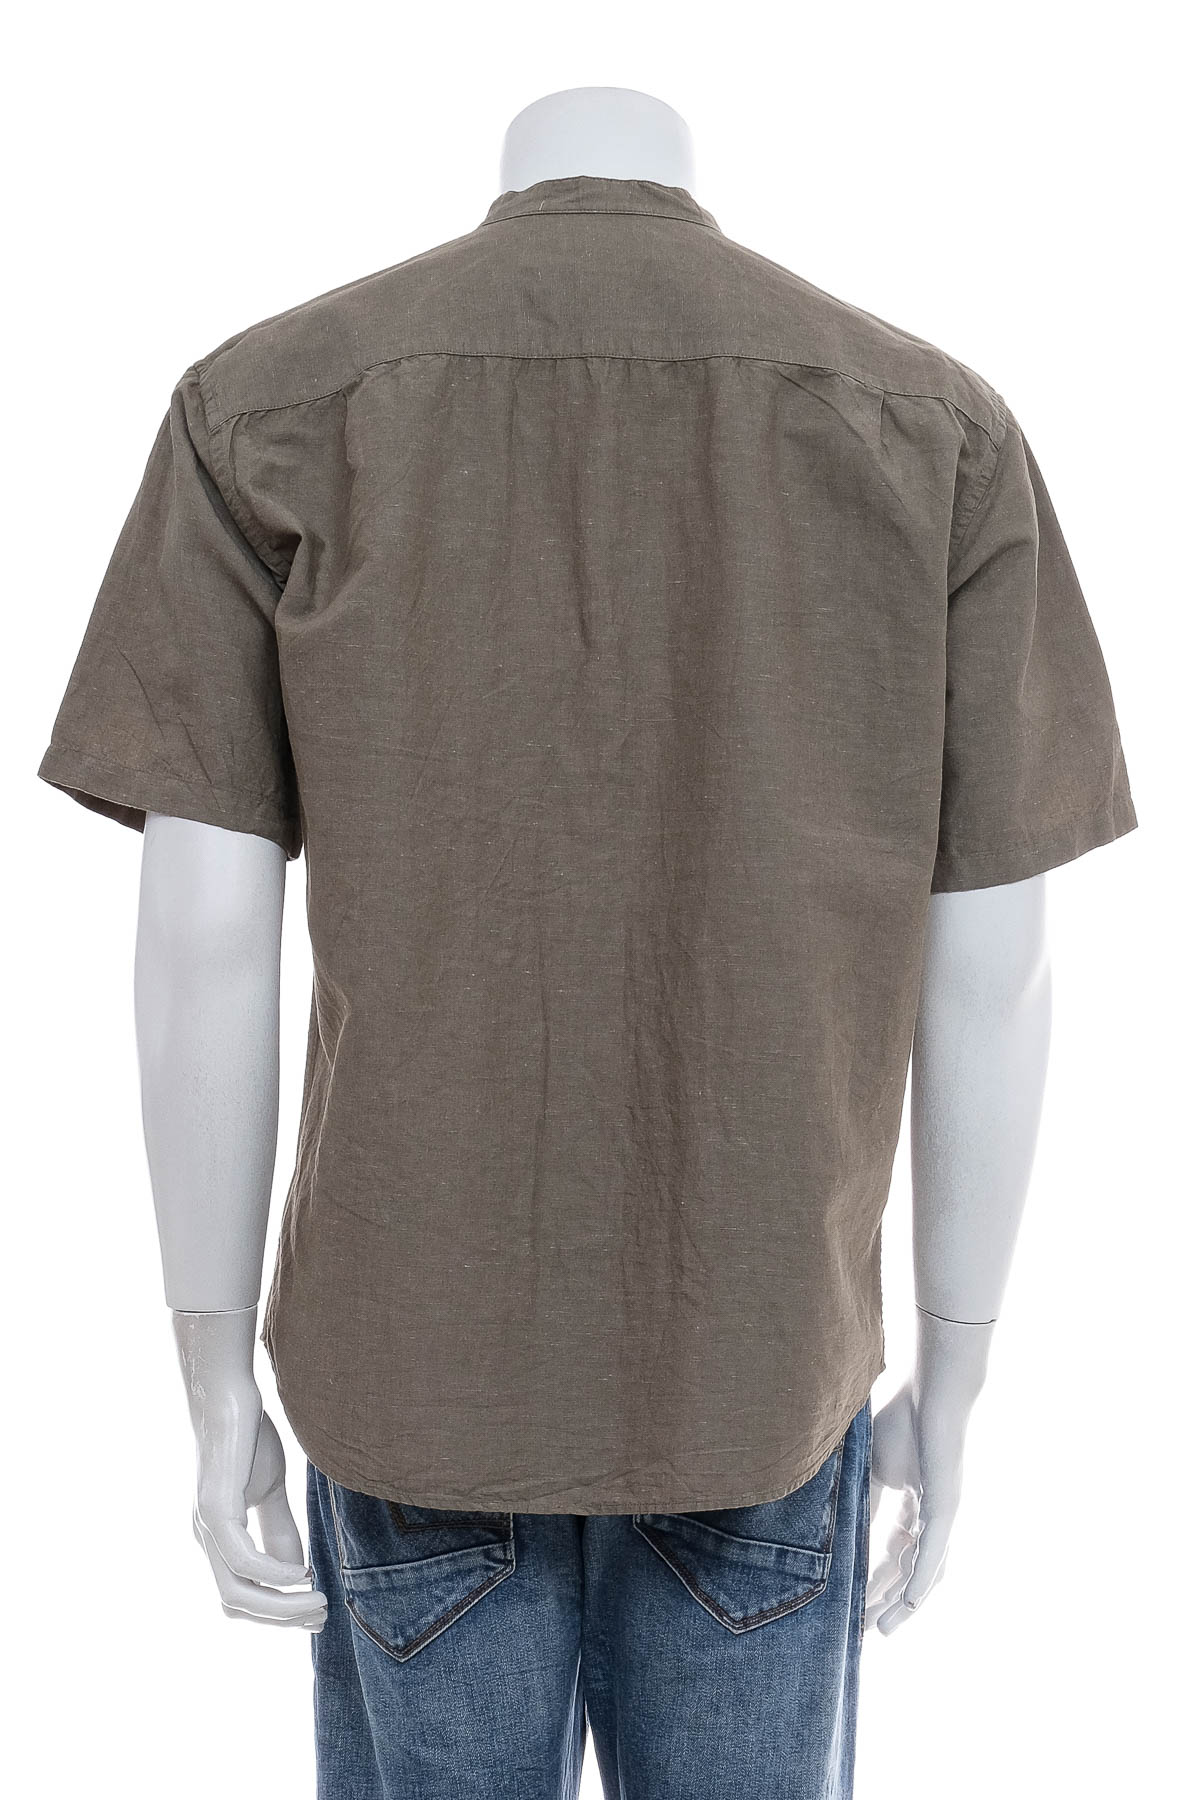 Ανδρικό πουκάμισο - UNIQLO - 1